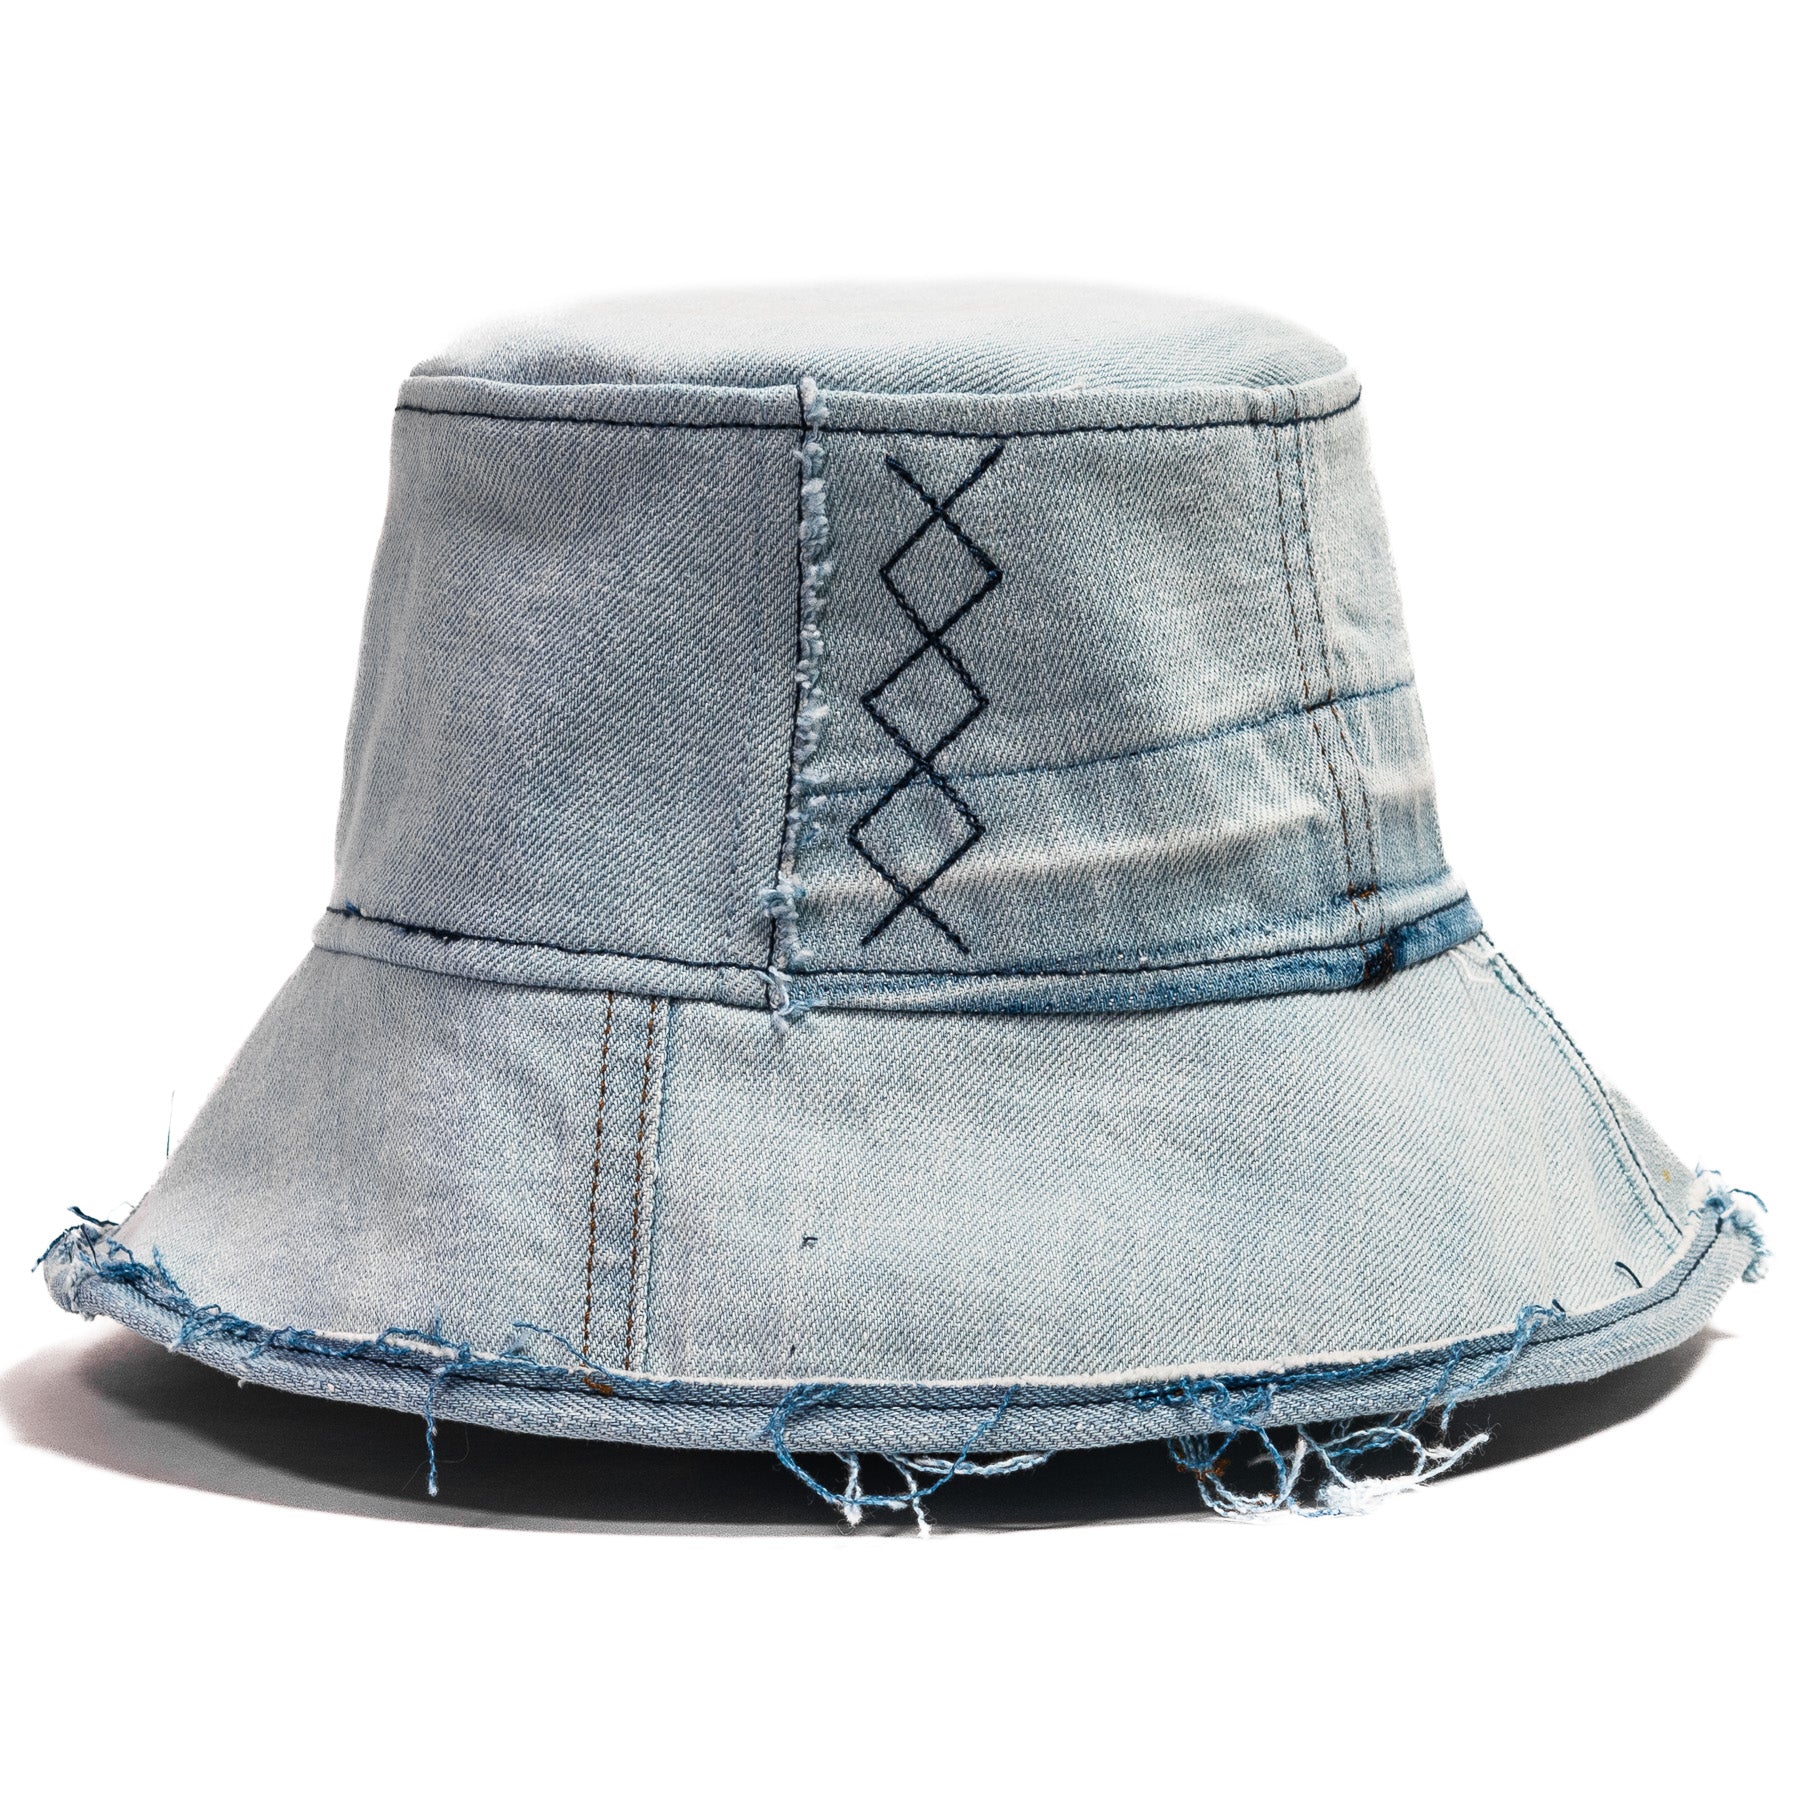 Mursaki Denim Chop Shop Bucket Hat - Light Blue